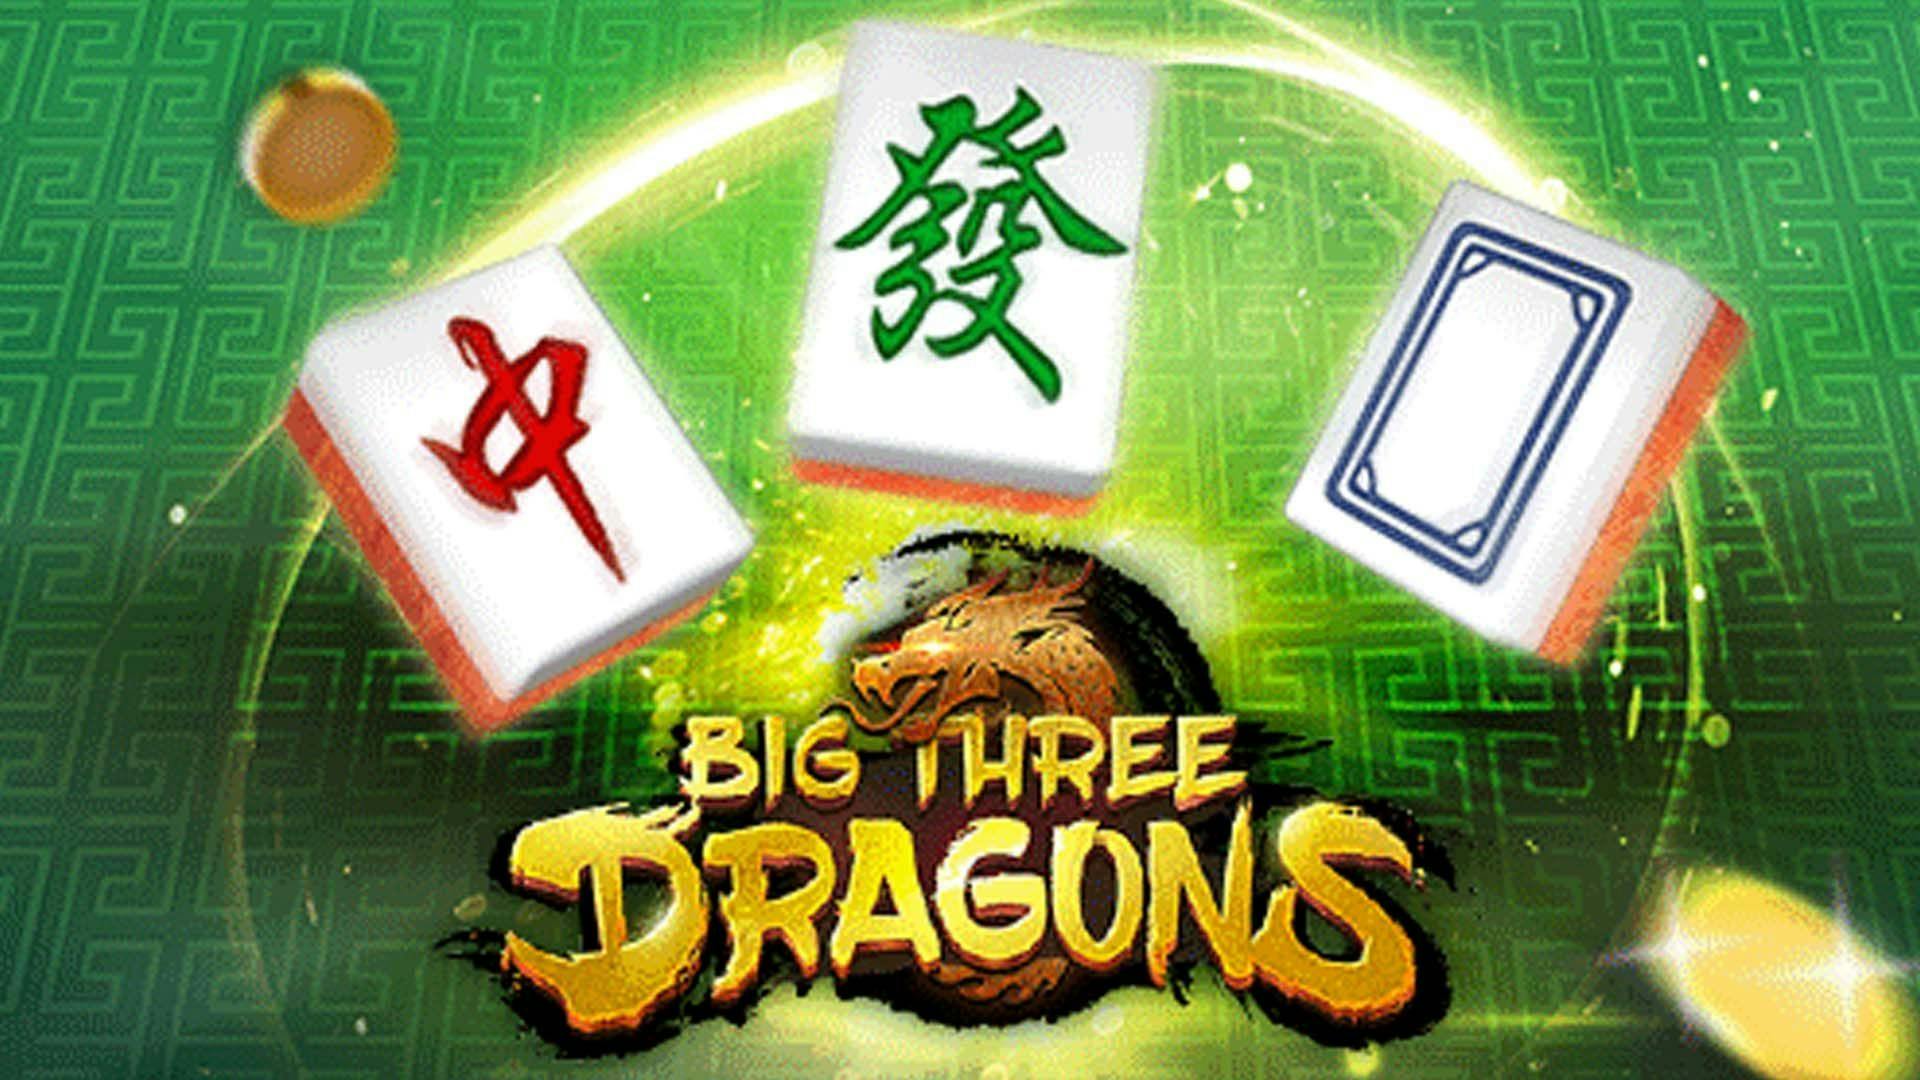 Big Three Dragons Slot Machine Online Free Game Play